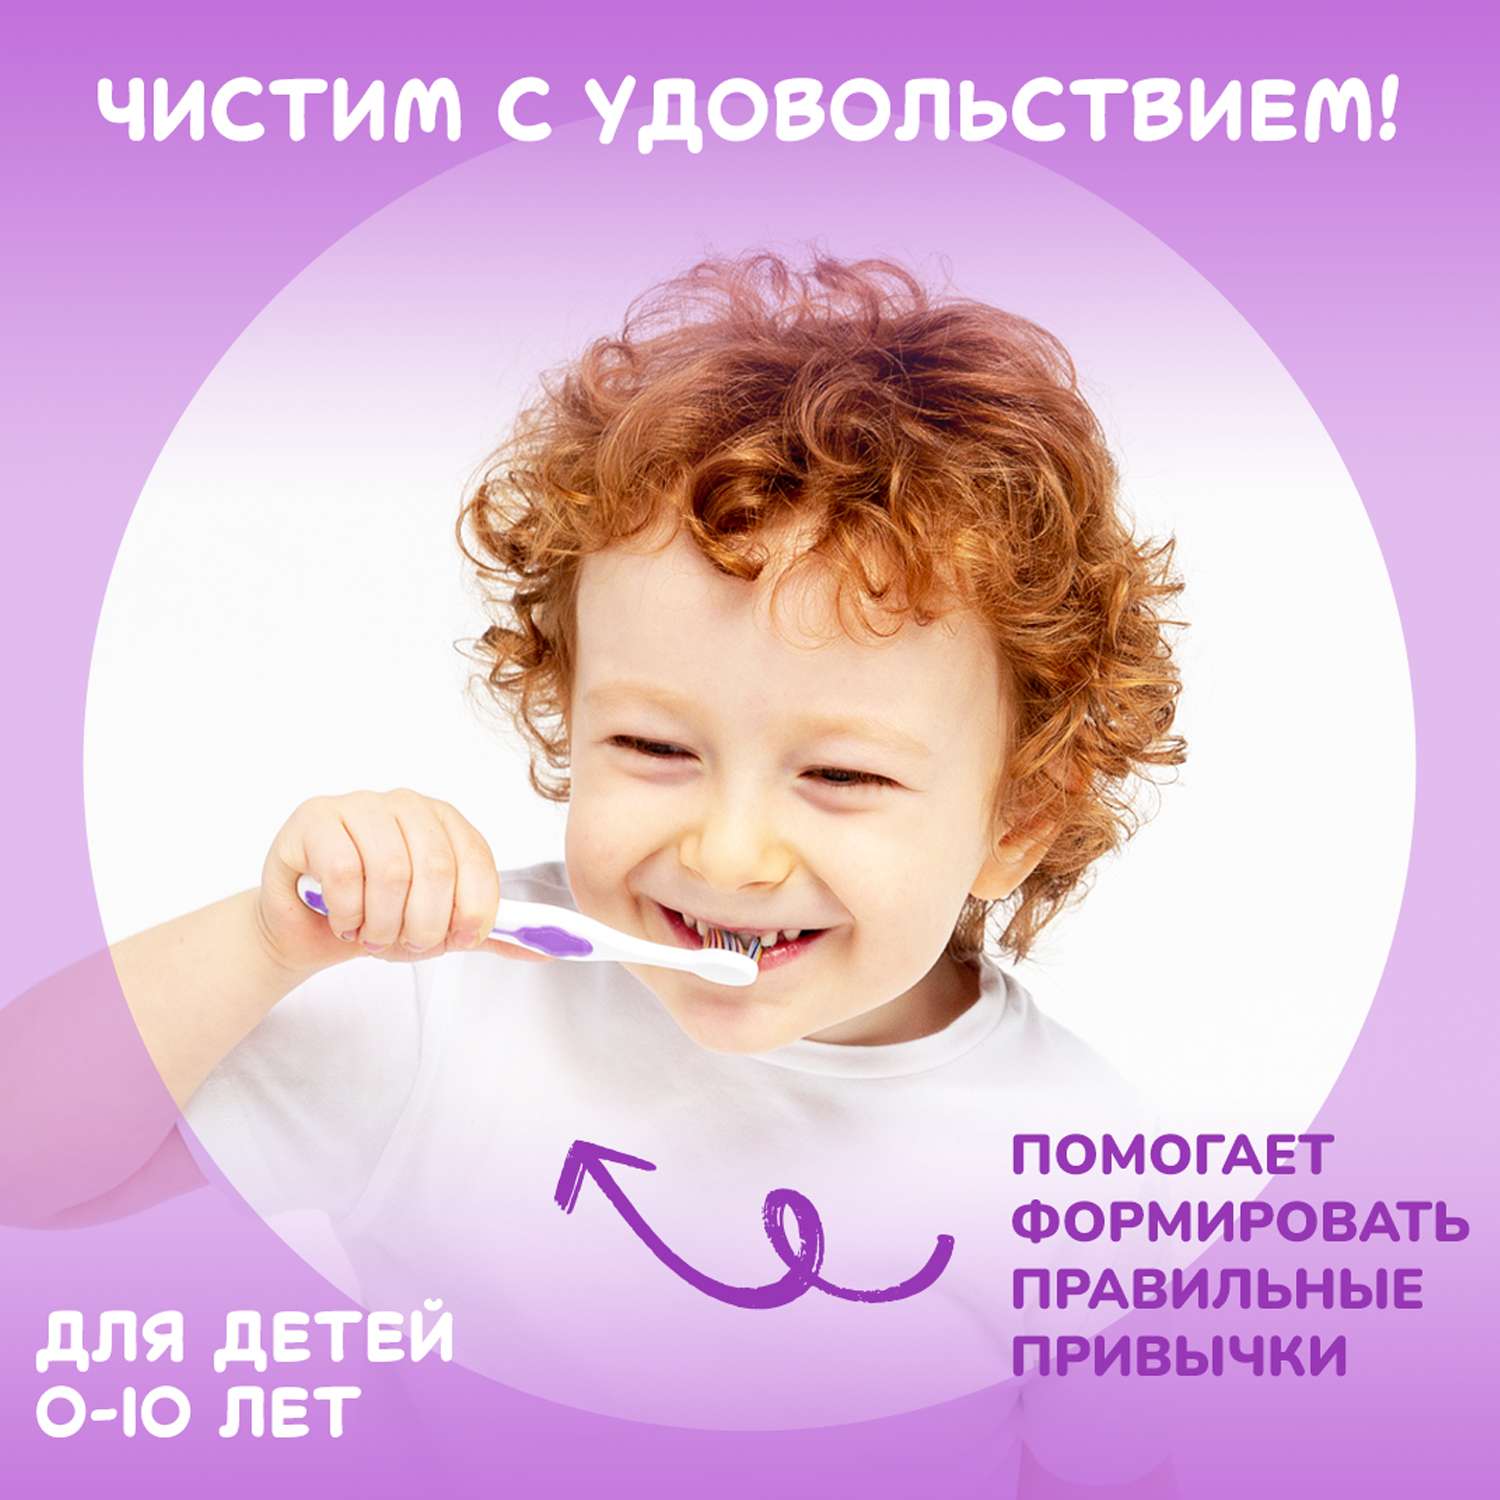 Подарочный набор Montcarotte гелеообразная зубная паста Ягодка Вишня + Зубная щетка Фиолетовая - фото 17